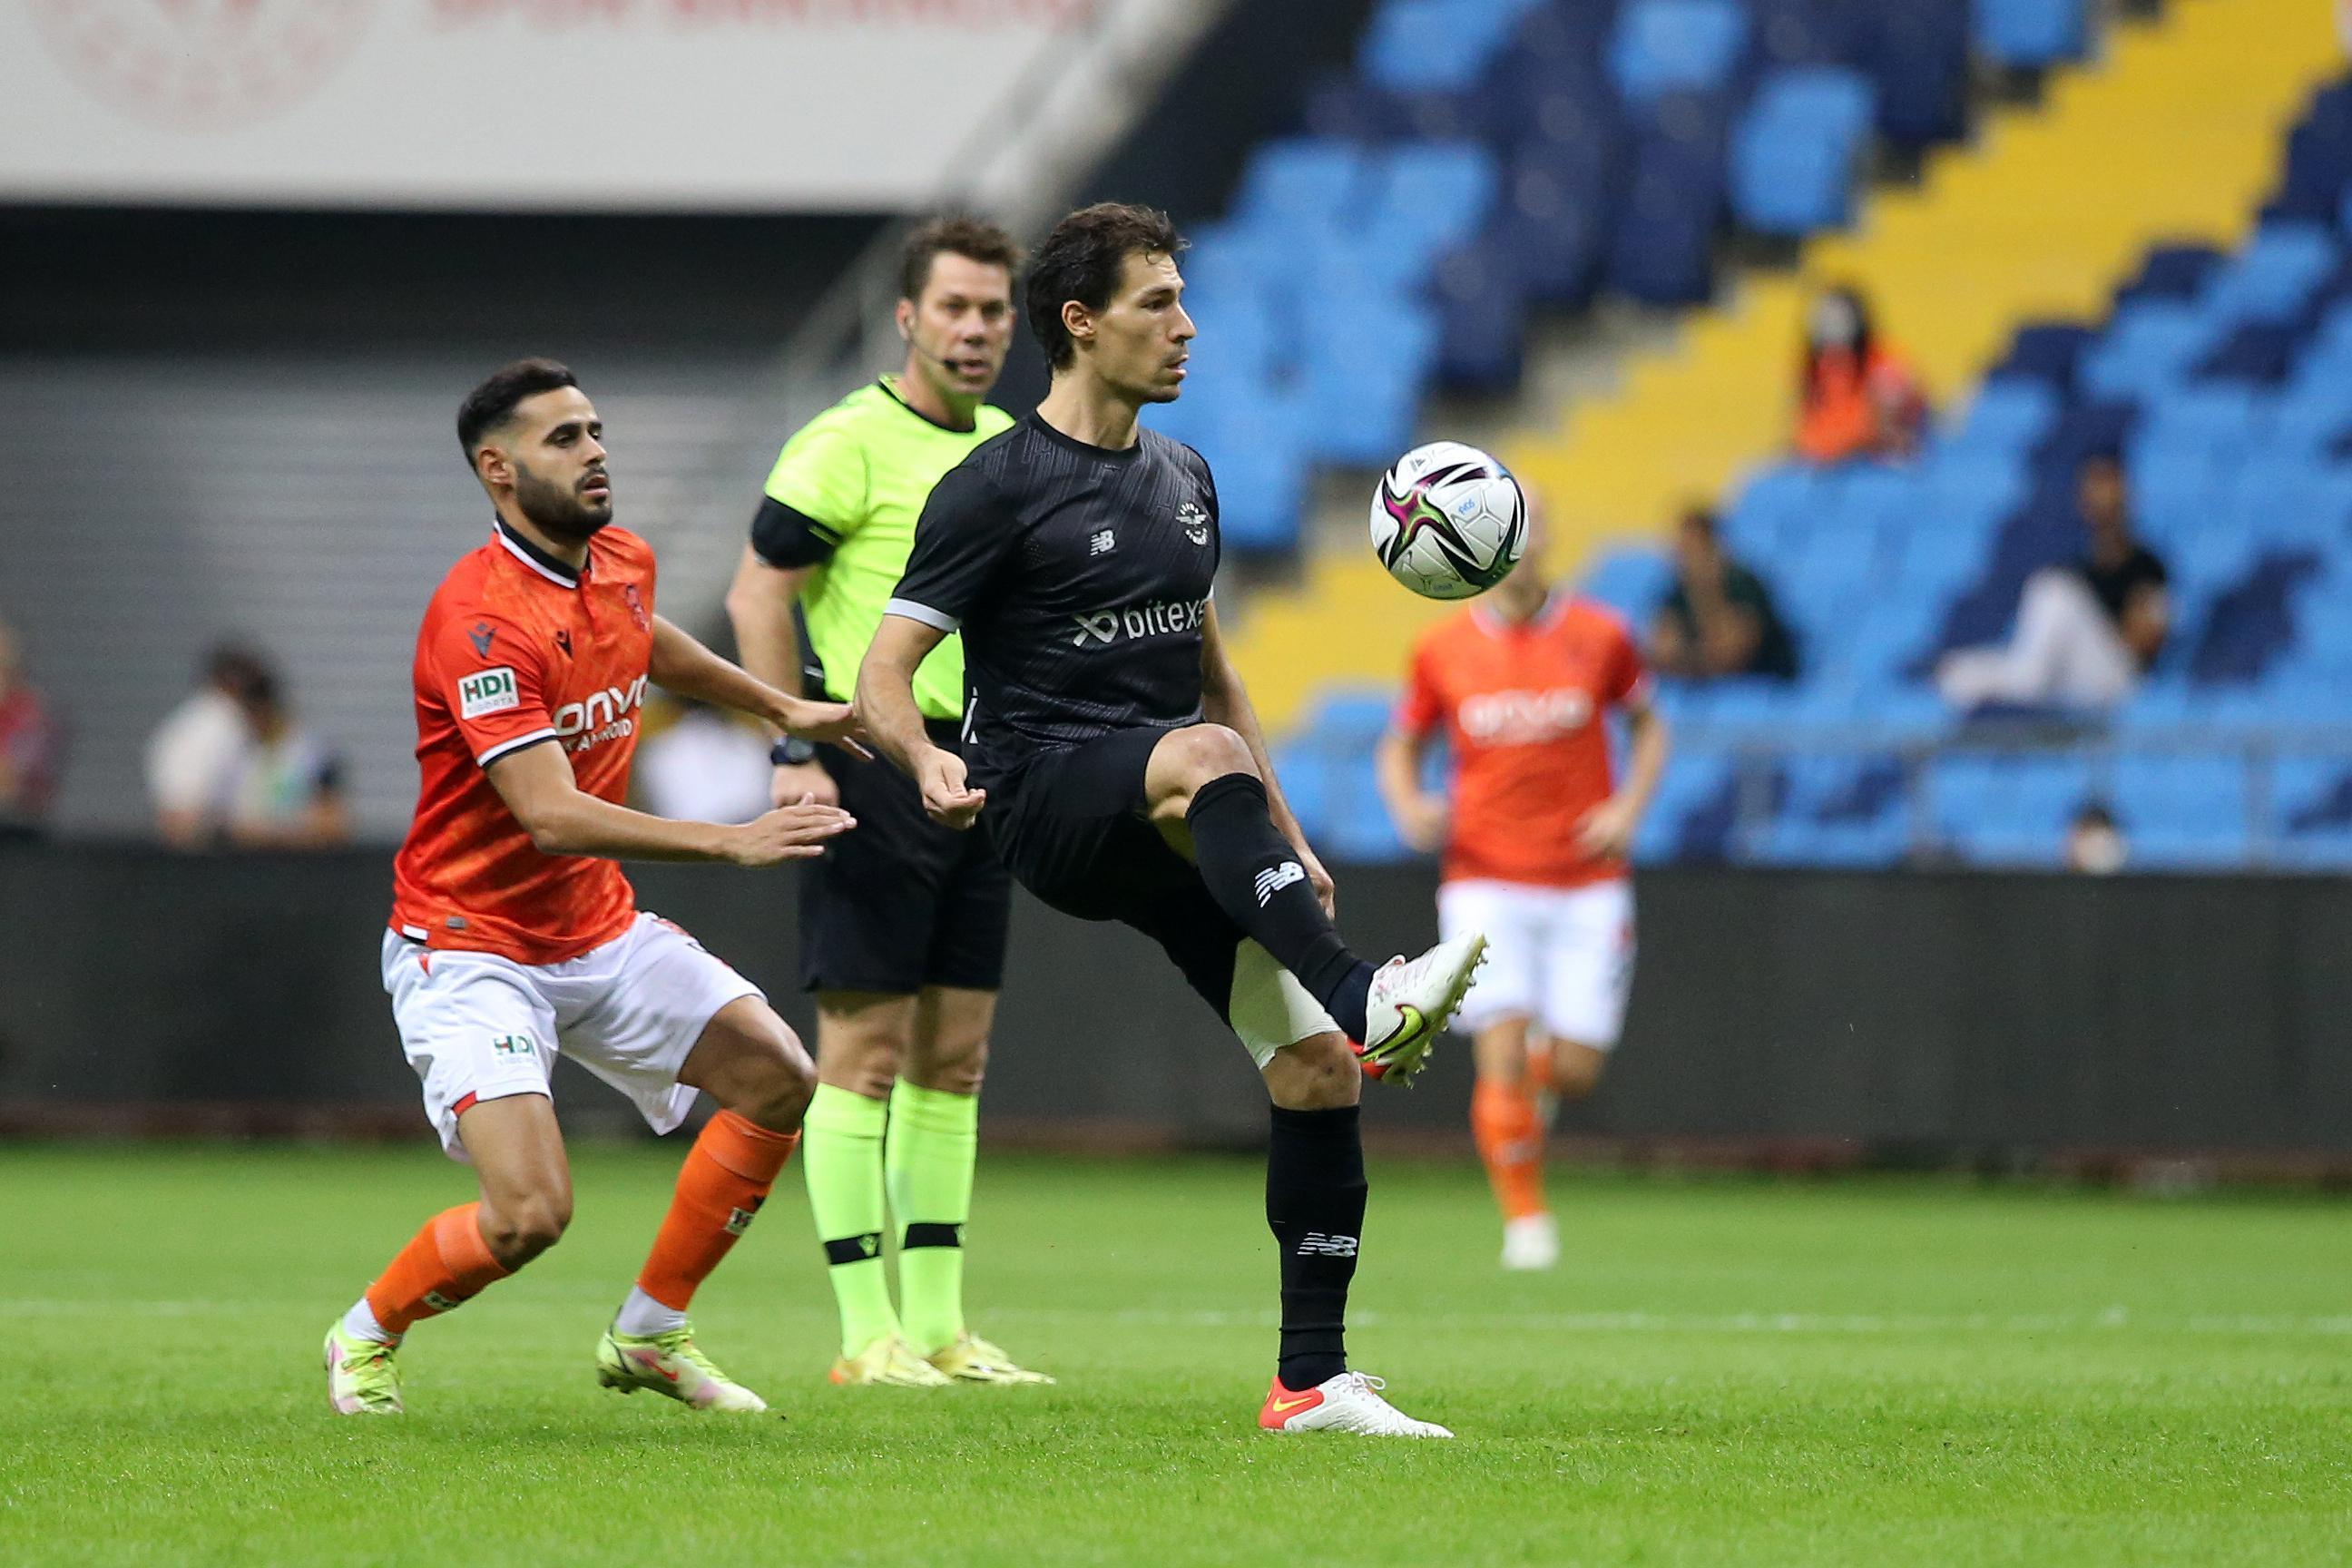 (ÖZET) Adana Demirspor-ÖK Yeni Malatyaspor maç sonucu: 0-2